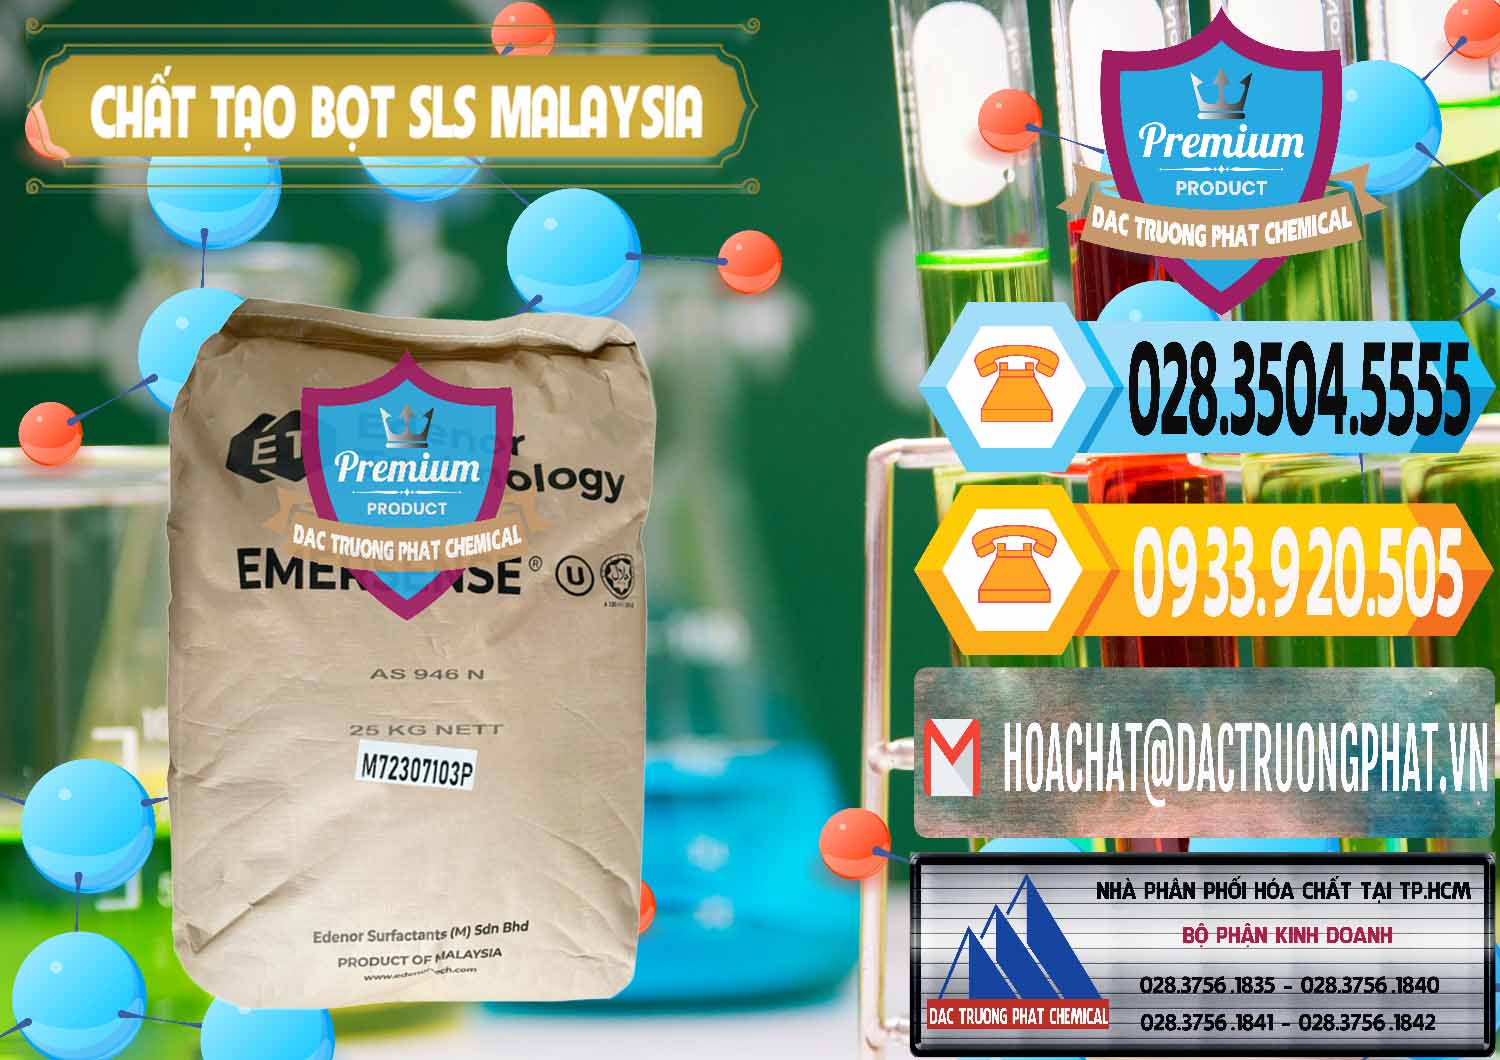 Cty nhập khẩu _ bán Chất Tạo Bọt SLS Emersense Mã Lai Malaysia - 0381 - Chuyên bán ( cung cấp ) hóa chất tại TP.HCM - hoachattayrua.net